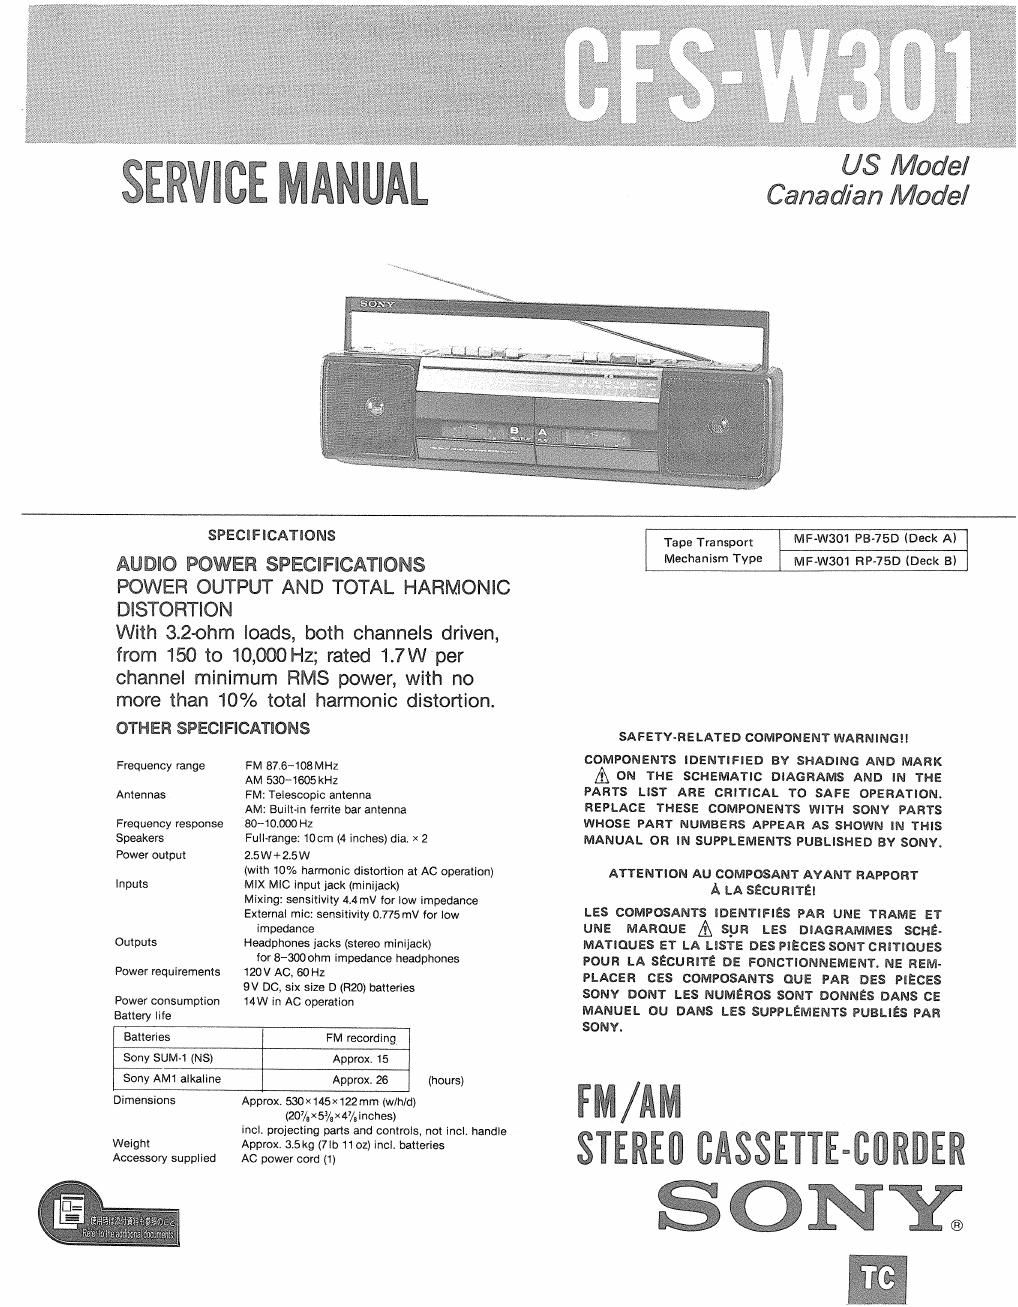 sony cfs w 301 service manual